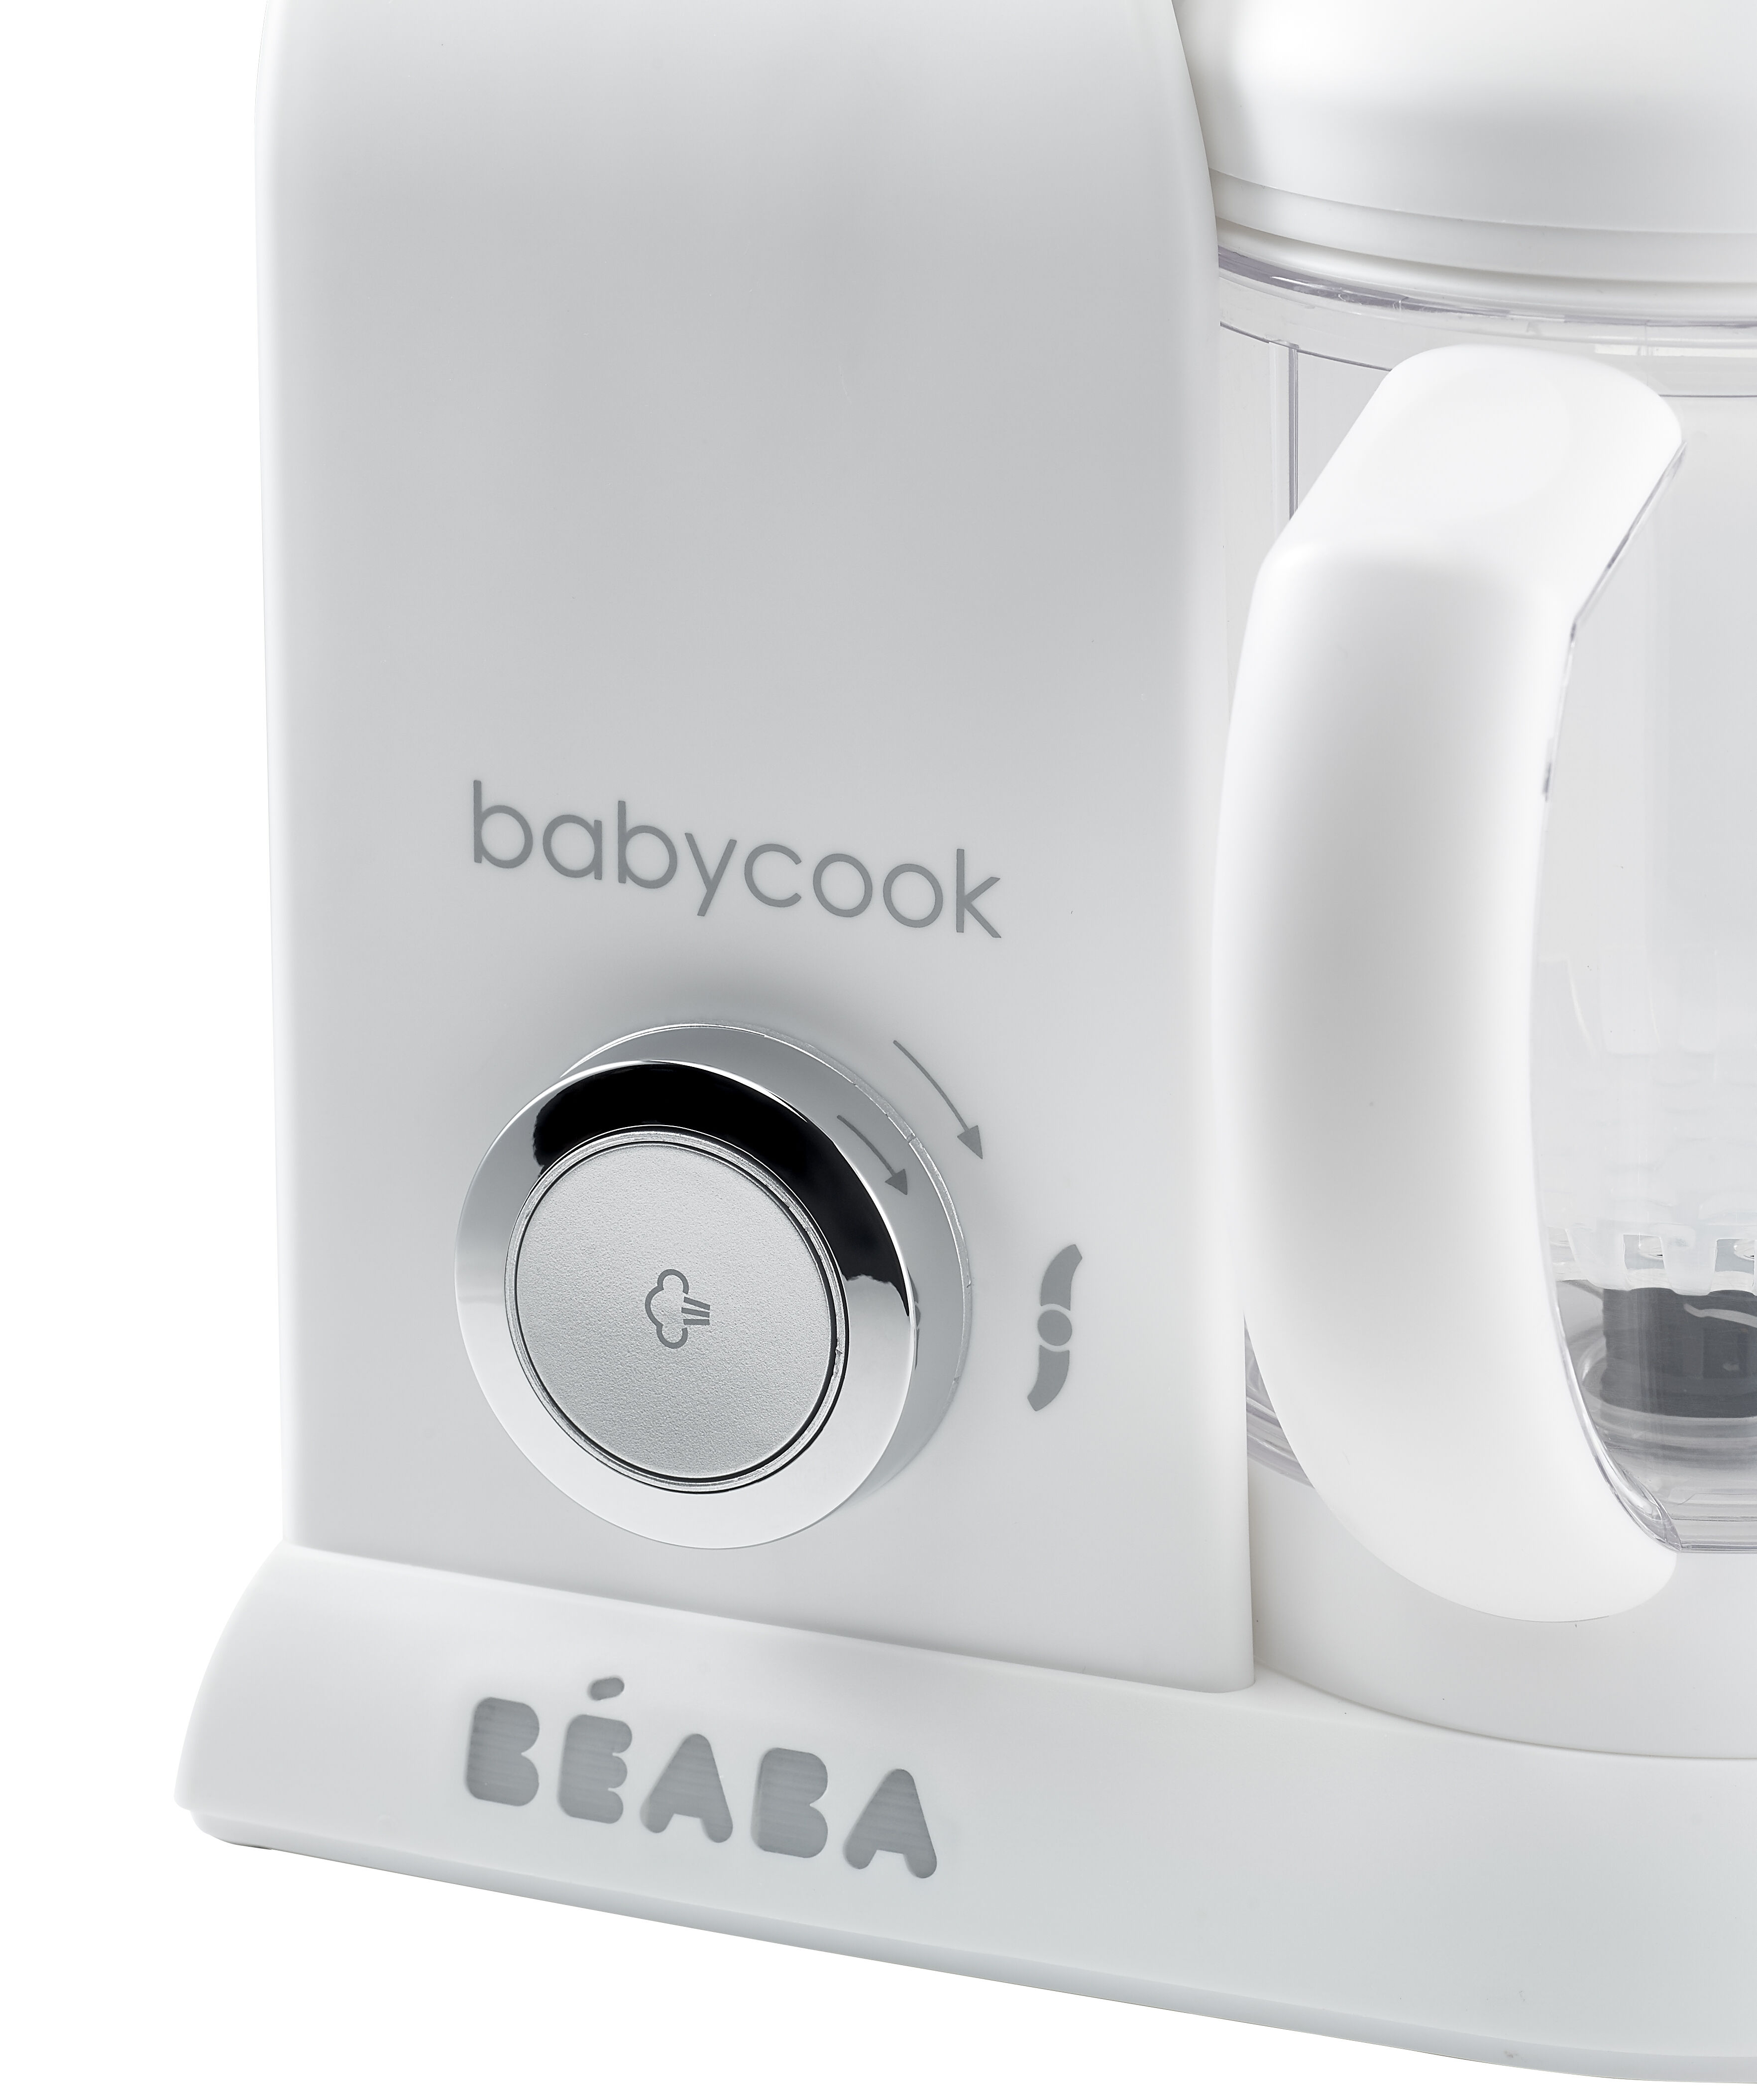 Robot de cocina 4-en-1 UK IMPORT - Color: Blanco/Plata Béaba BABYCOOK SOLO Edición Silver/White 